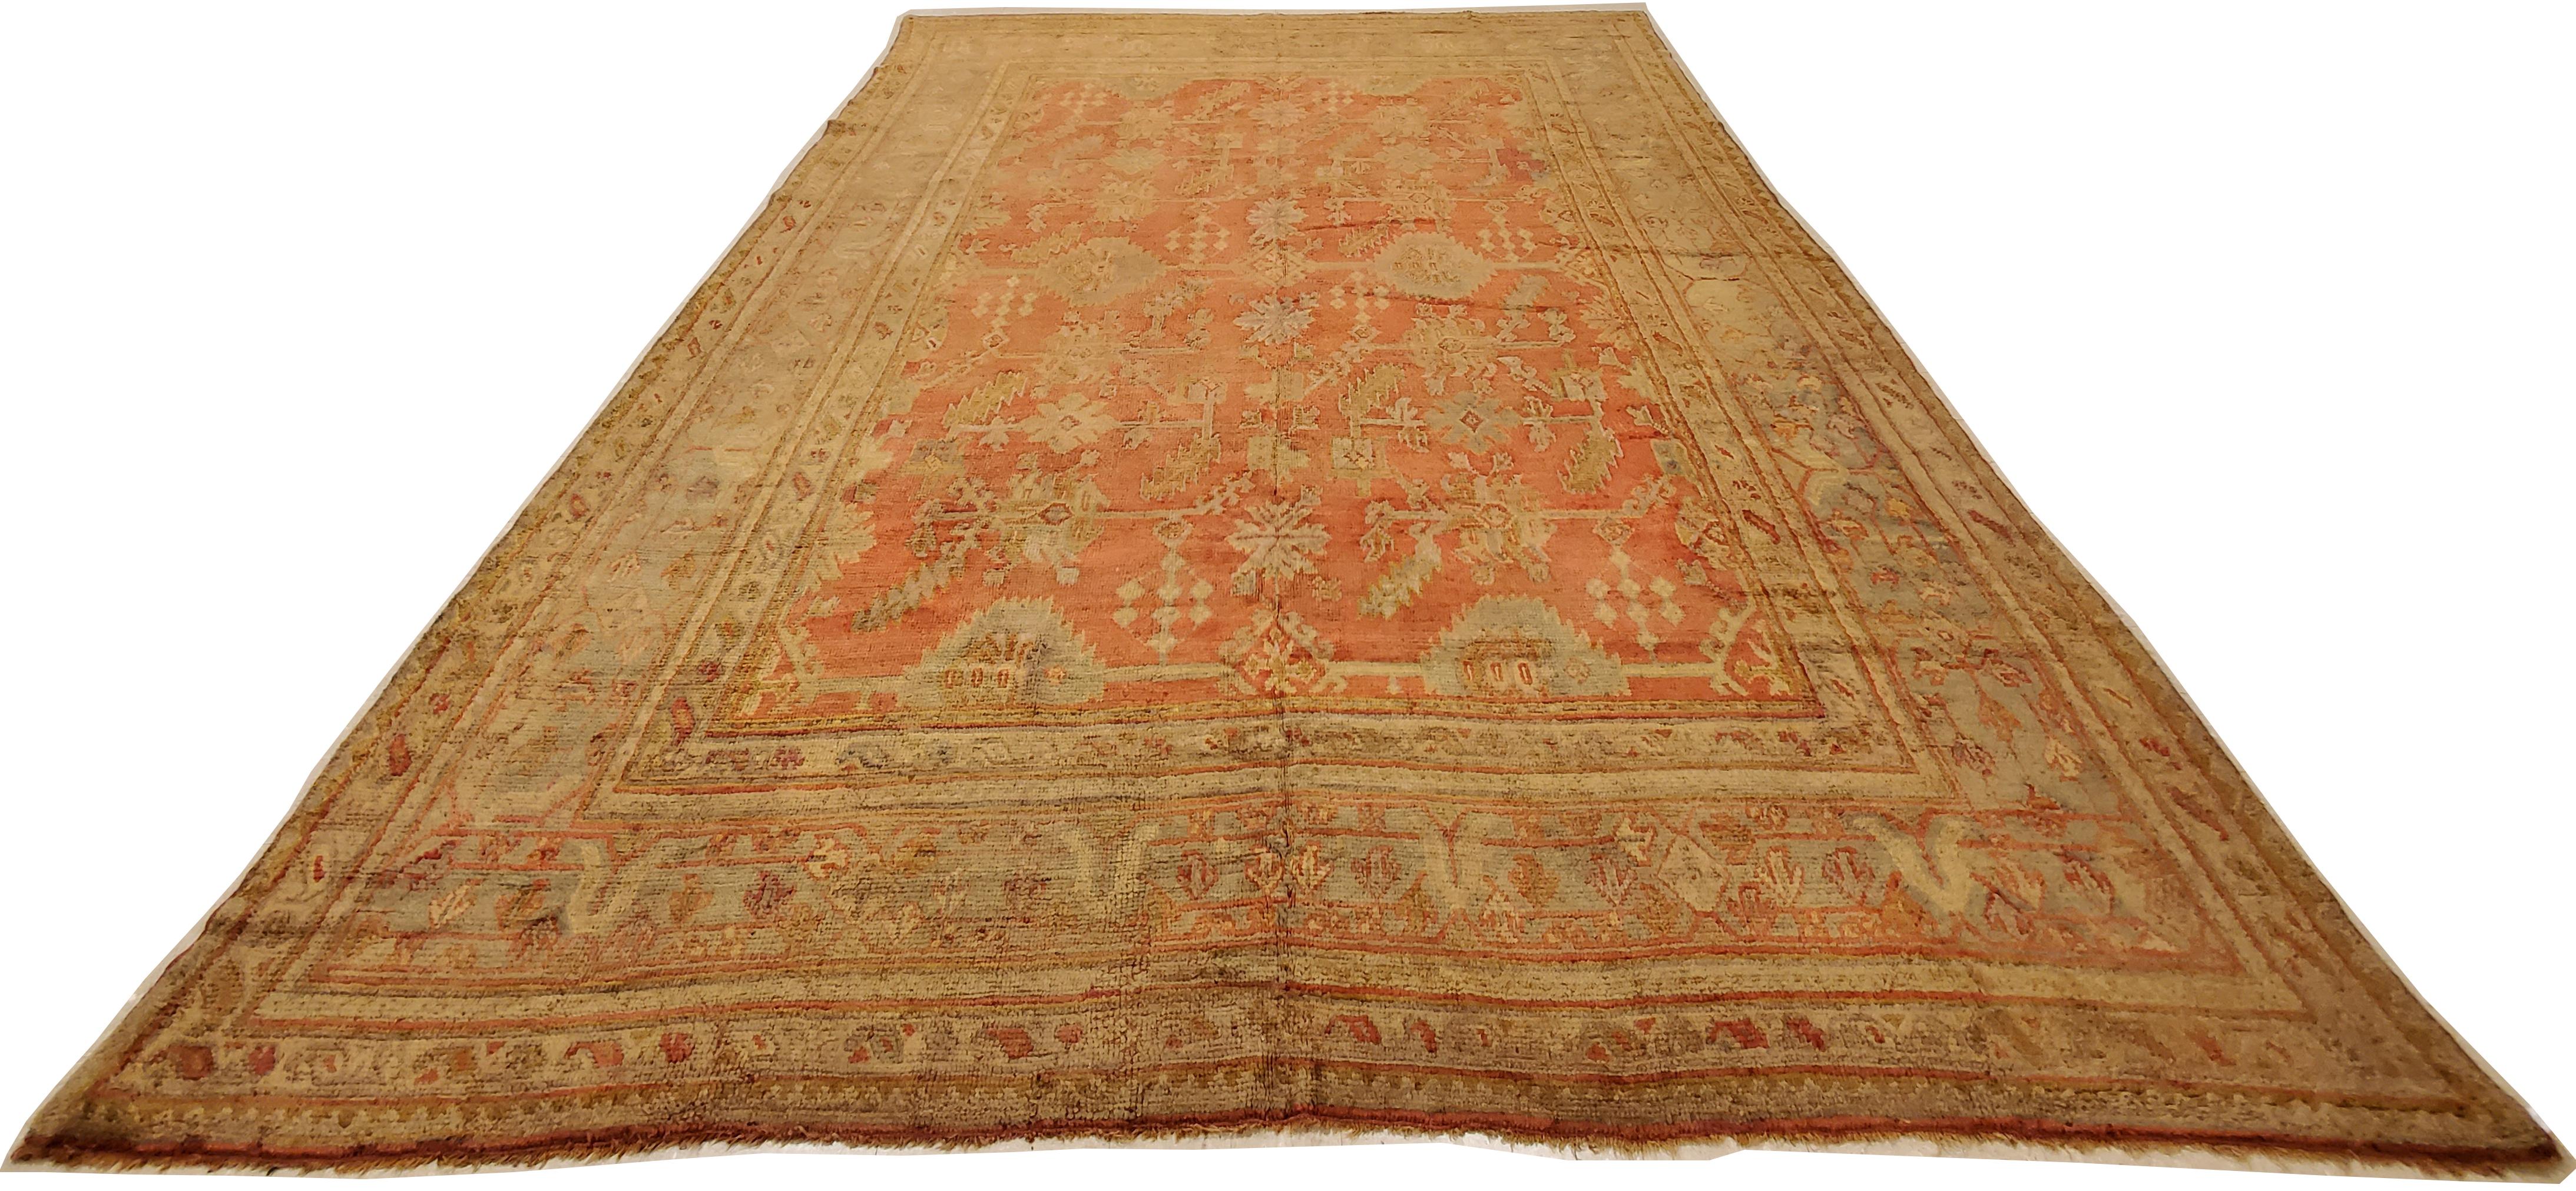 Les tapis Oushak, également connus sous le nom de tapis Ushak, sont tissés dans l'ouest de la Turquie et présentent des motifs distincts, tels que des motifs floraux angulaires à grande échelle. Ils évoquent généralement le calme et la tranquillité